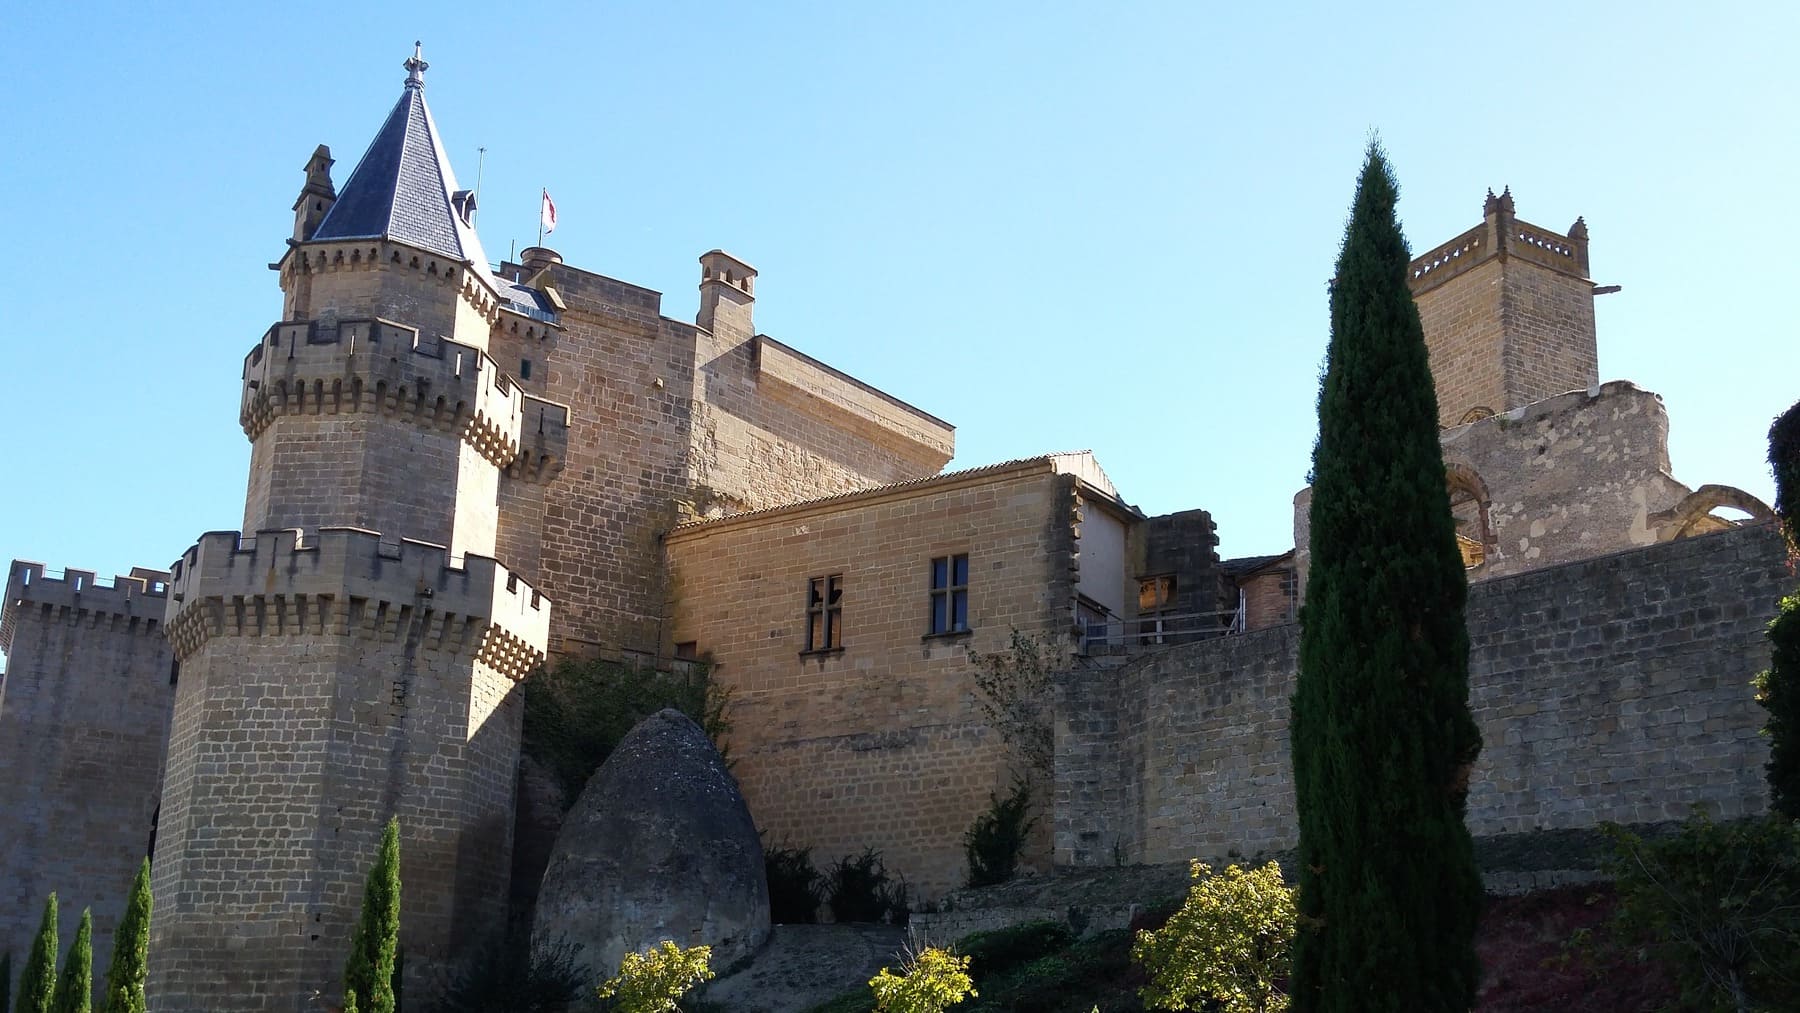 Rutas para visitar castillos en España en el verano 2021